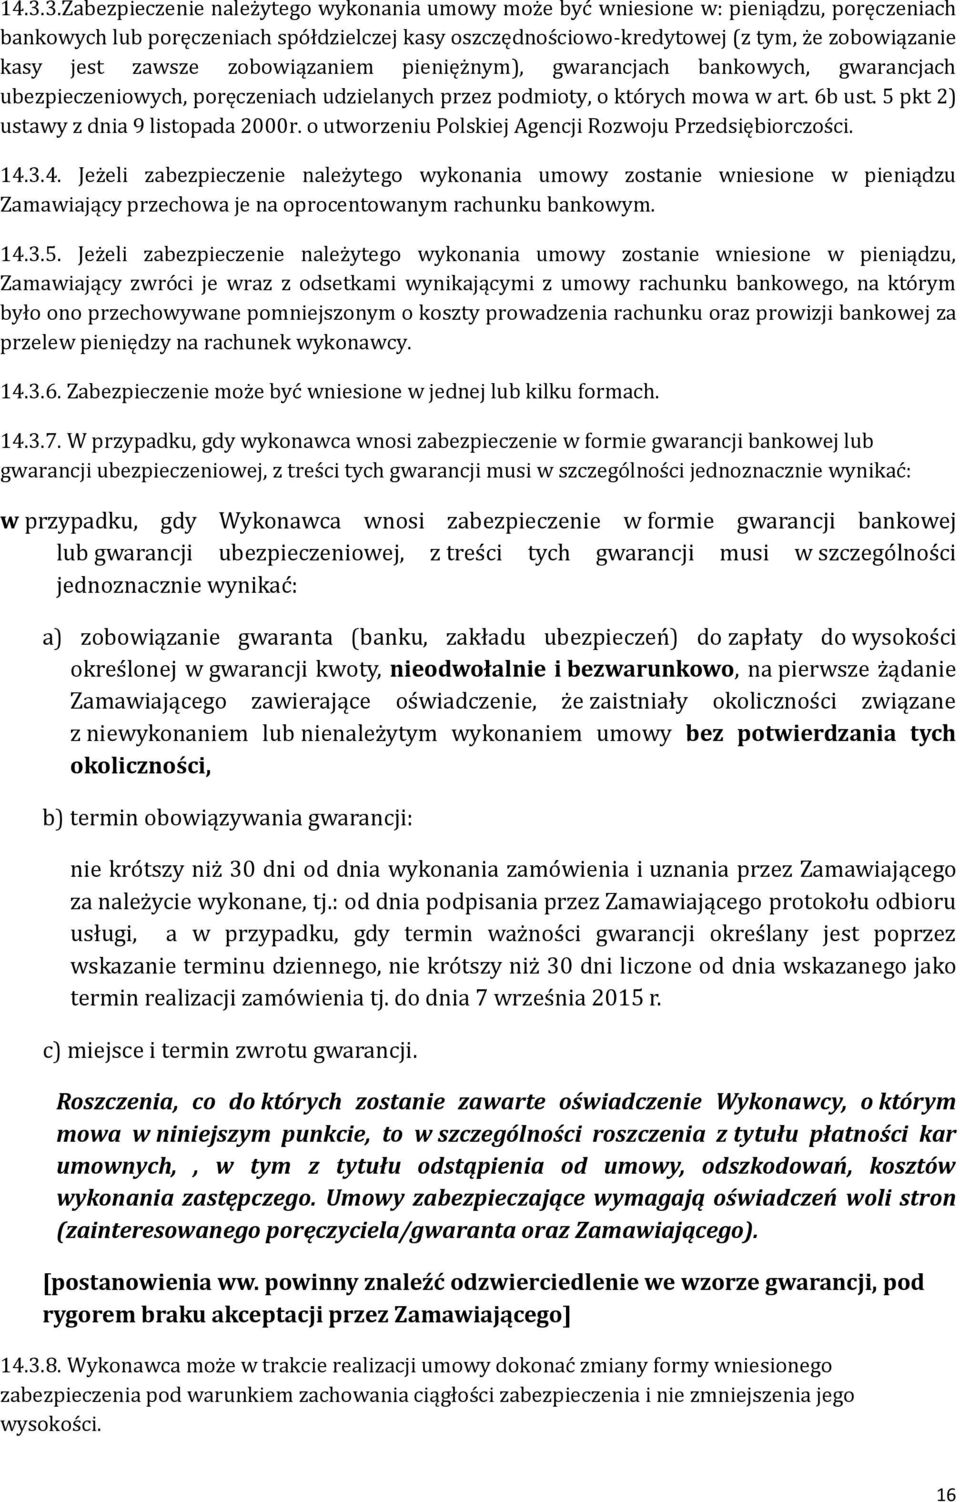 5 pkt 2) ustawy z dnia 9 listopada 2000r. o utworzeniu Polskiej Agencji Rozwoju Przedsiębiorczości. 14.